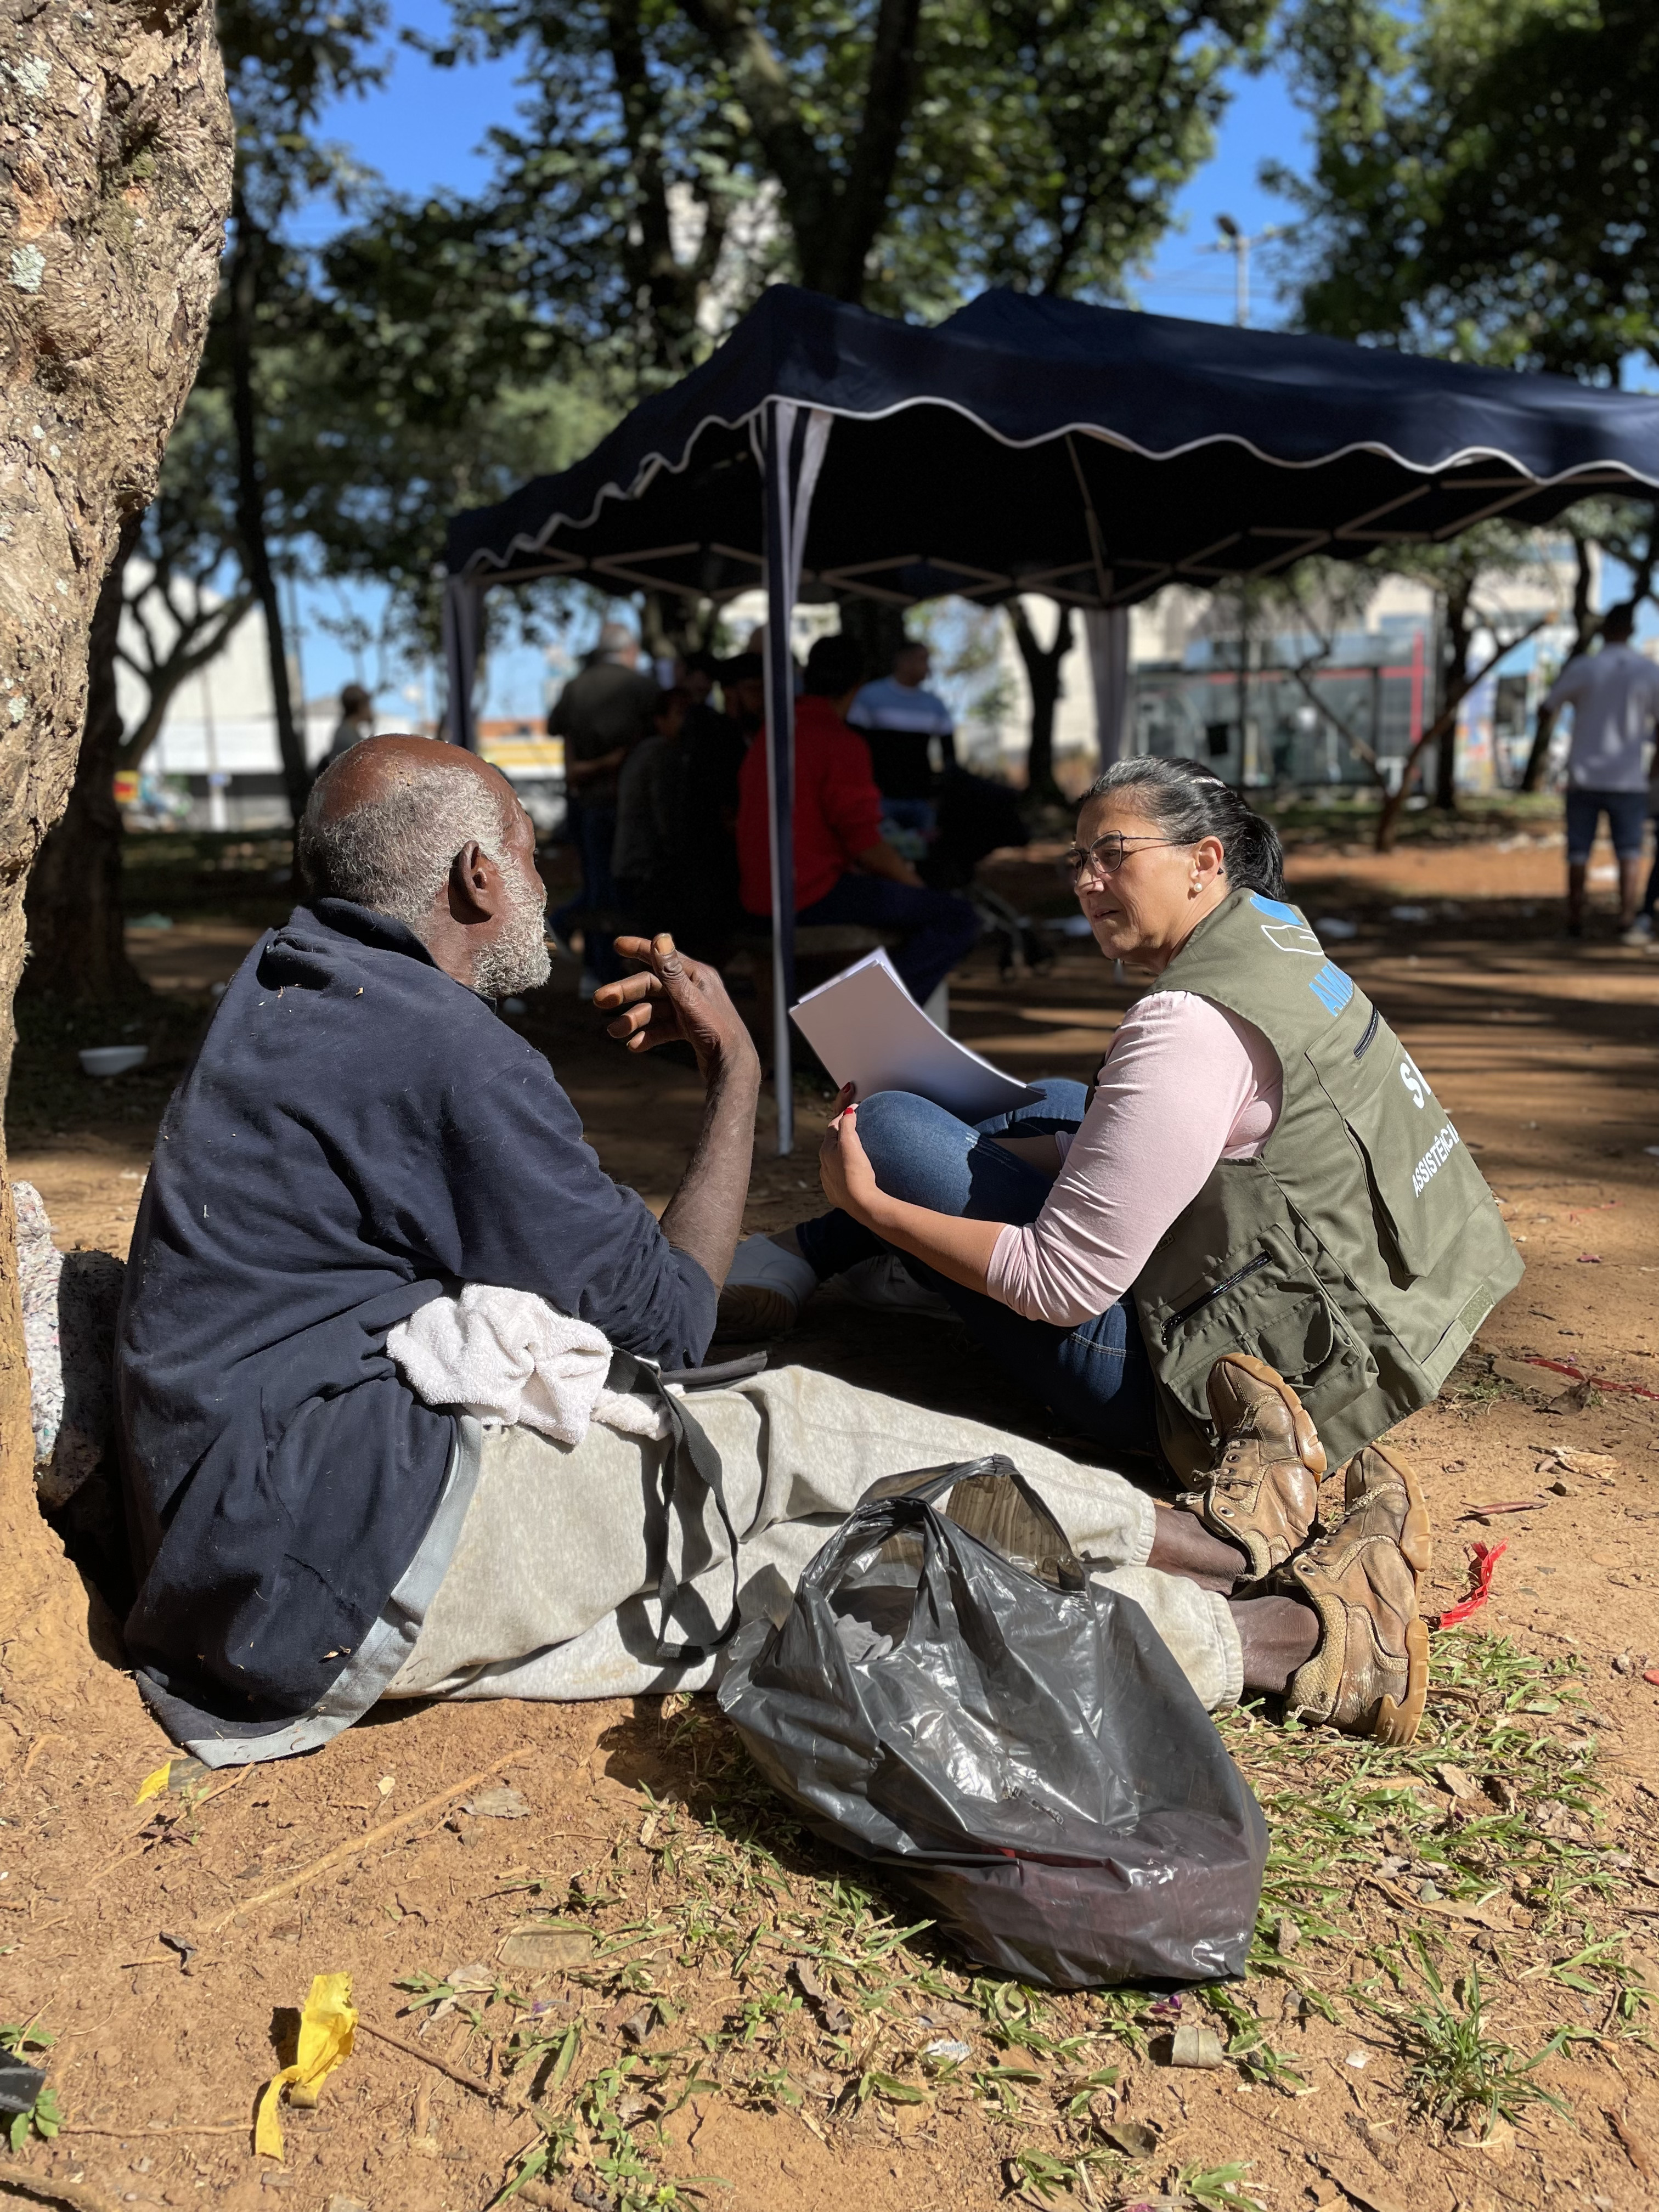 Na foto, um homem de calça cinza e camisa azul está sentado ao pé de uma árvore. Ele está conversando com uma mulher que veste rosa e jeans azulado, com o colete verde do Ampara SP. No fumdo, algumas pessoas estão embaixo de uma tenda azul.